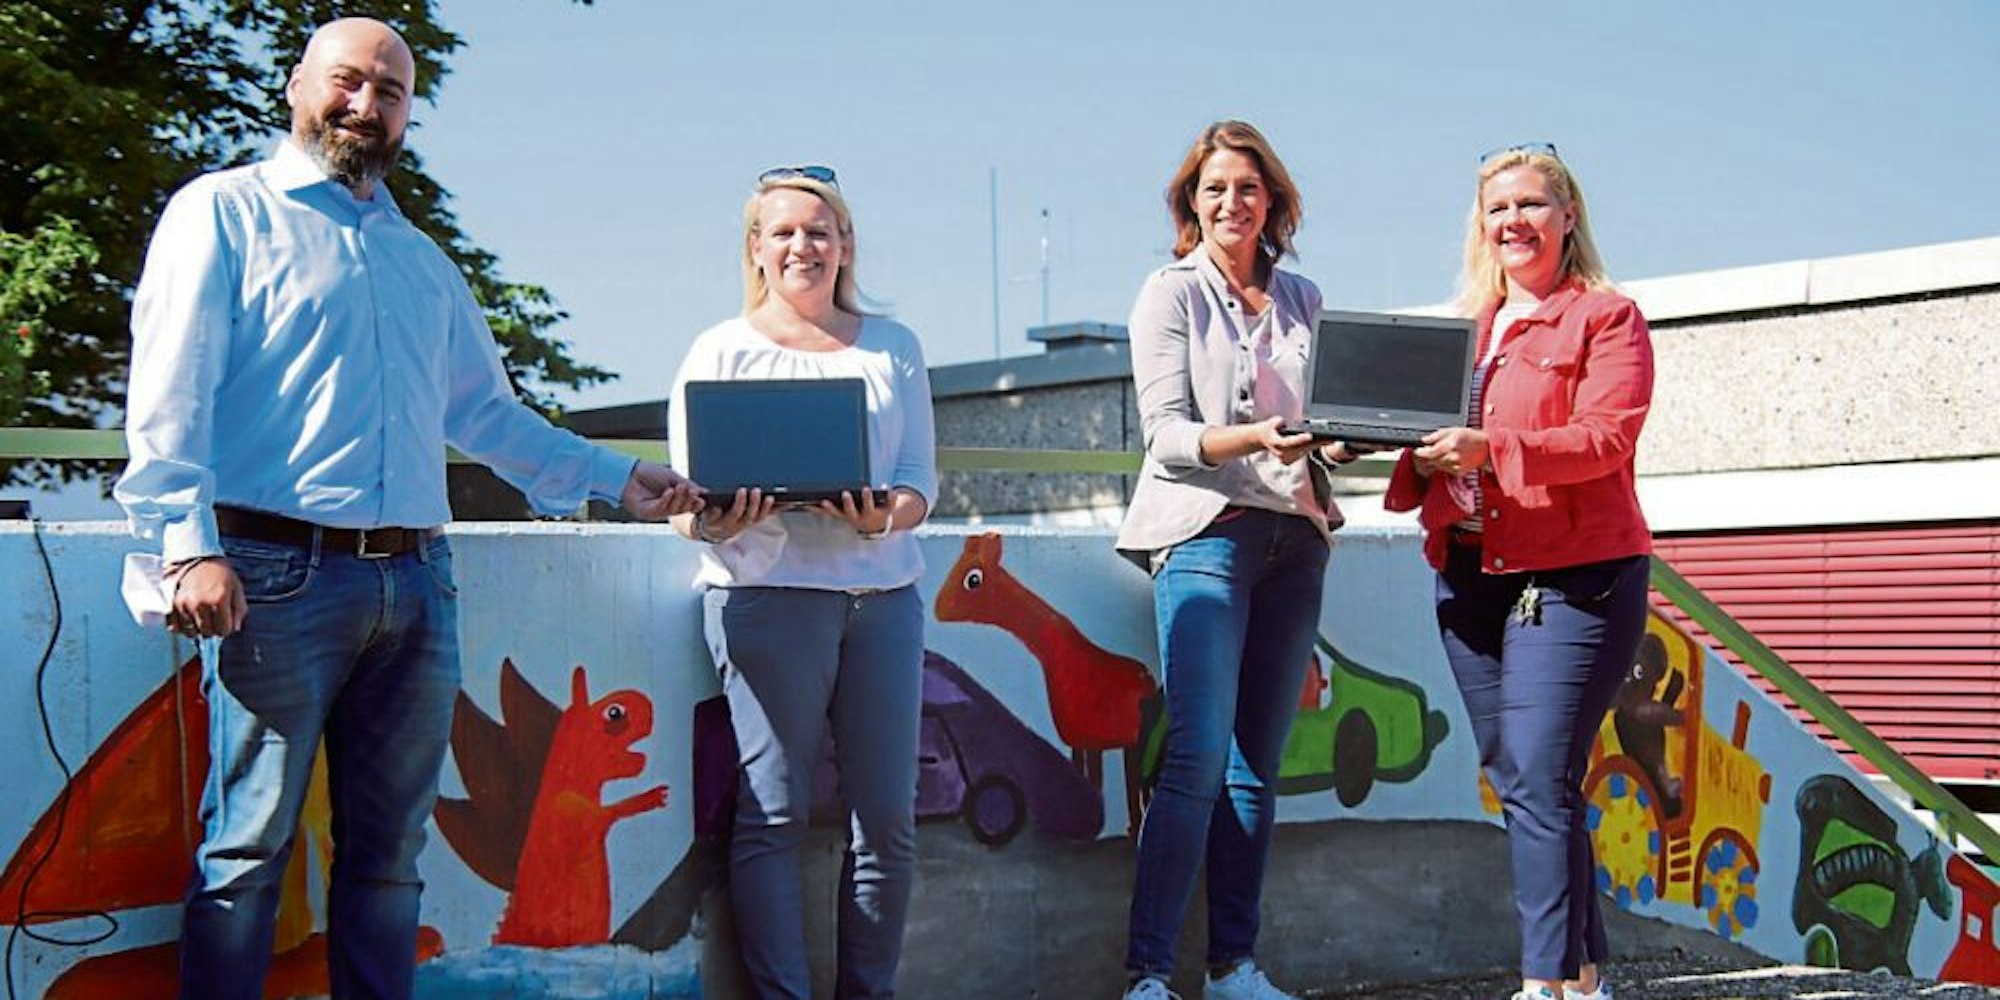 Bei der Übergabe der 20 Business-Laptops: Thorsten Bastian von der Telekom mit Monic Beck, Stephanie Pfeifer und Bettina Urban.